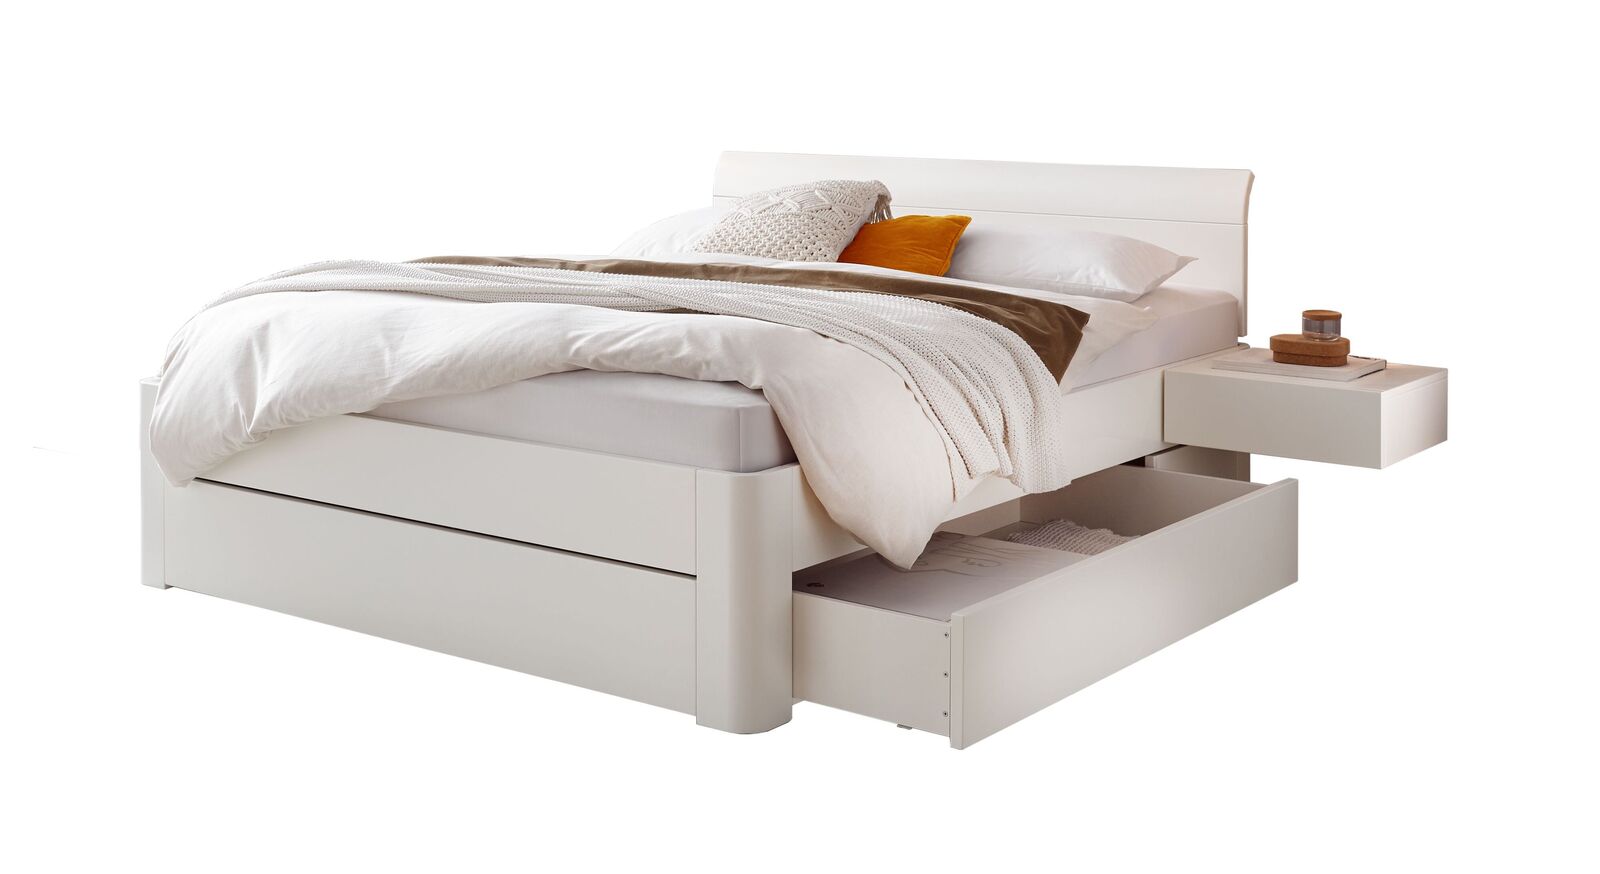 Hochwertiges Schubkasten-Doppelbett Alfeo in Weiß